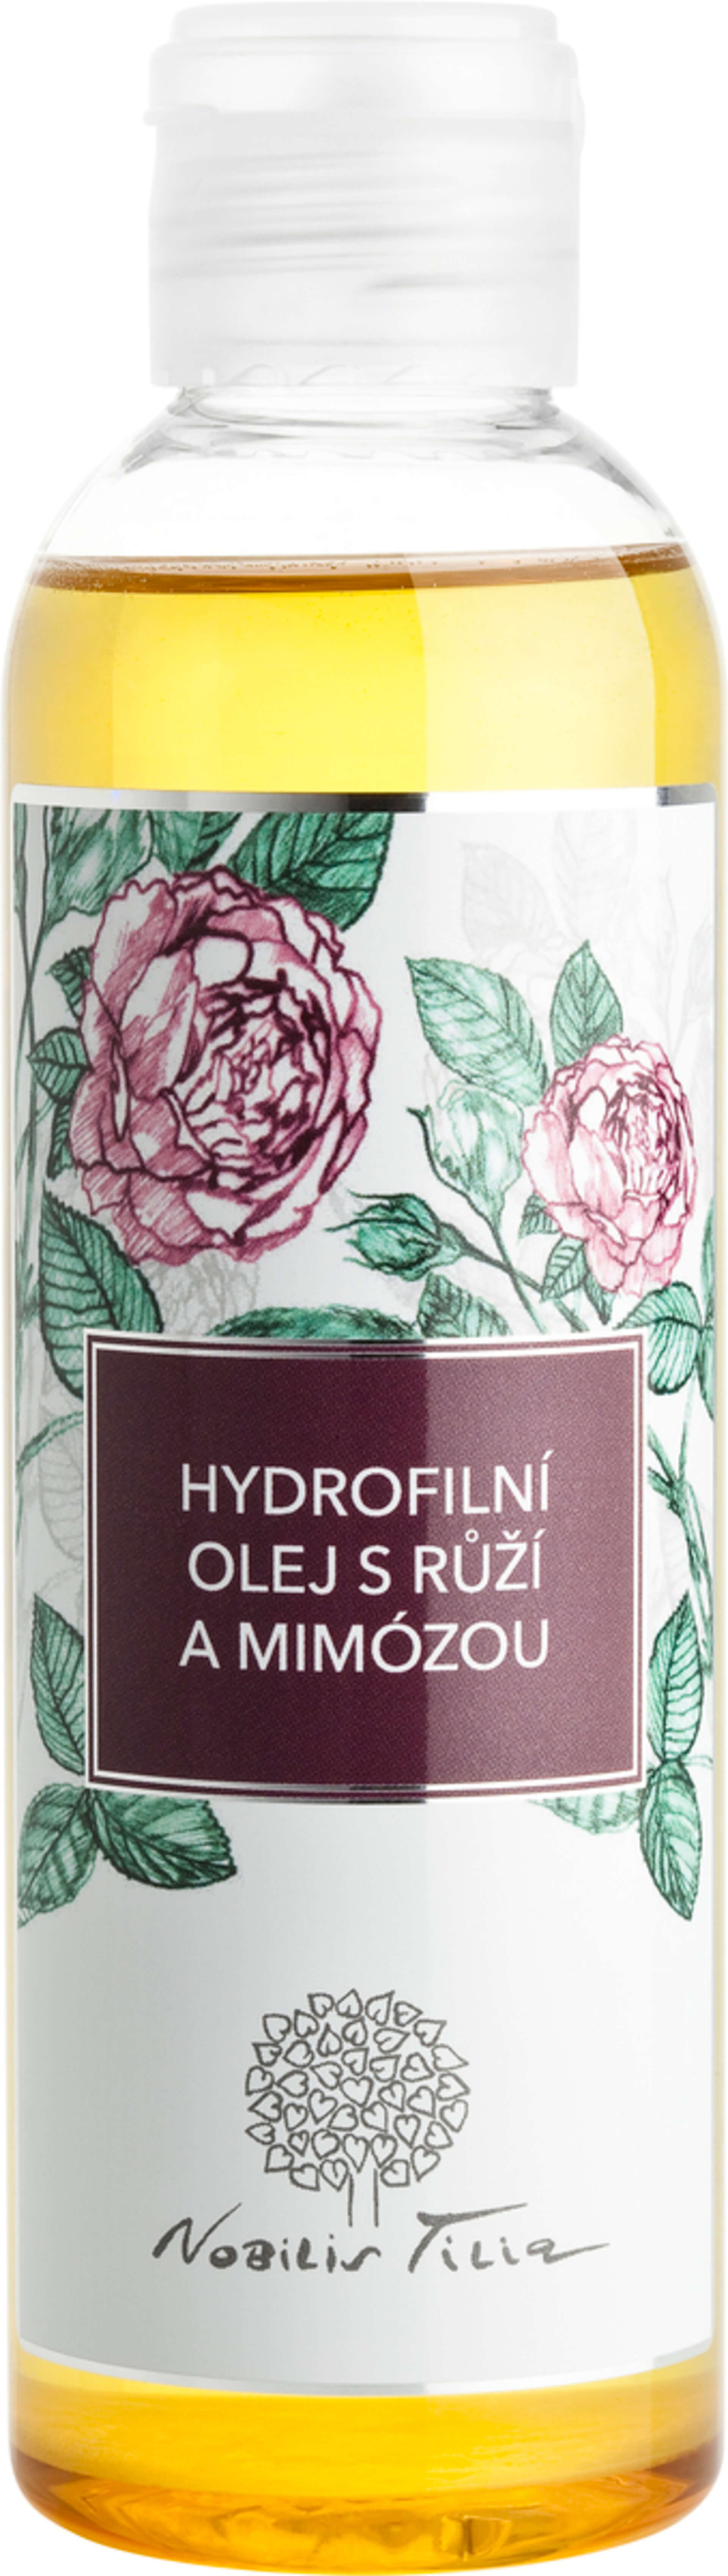 Levně Nobilis Tilia Hydrofilní olej s Růží a mimózou 200 ml